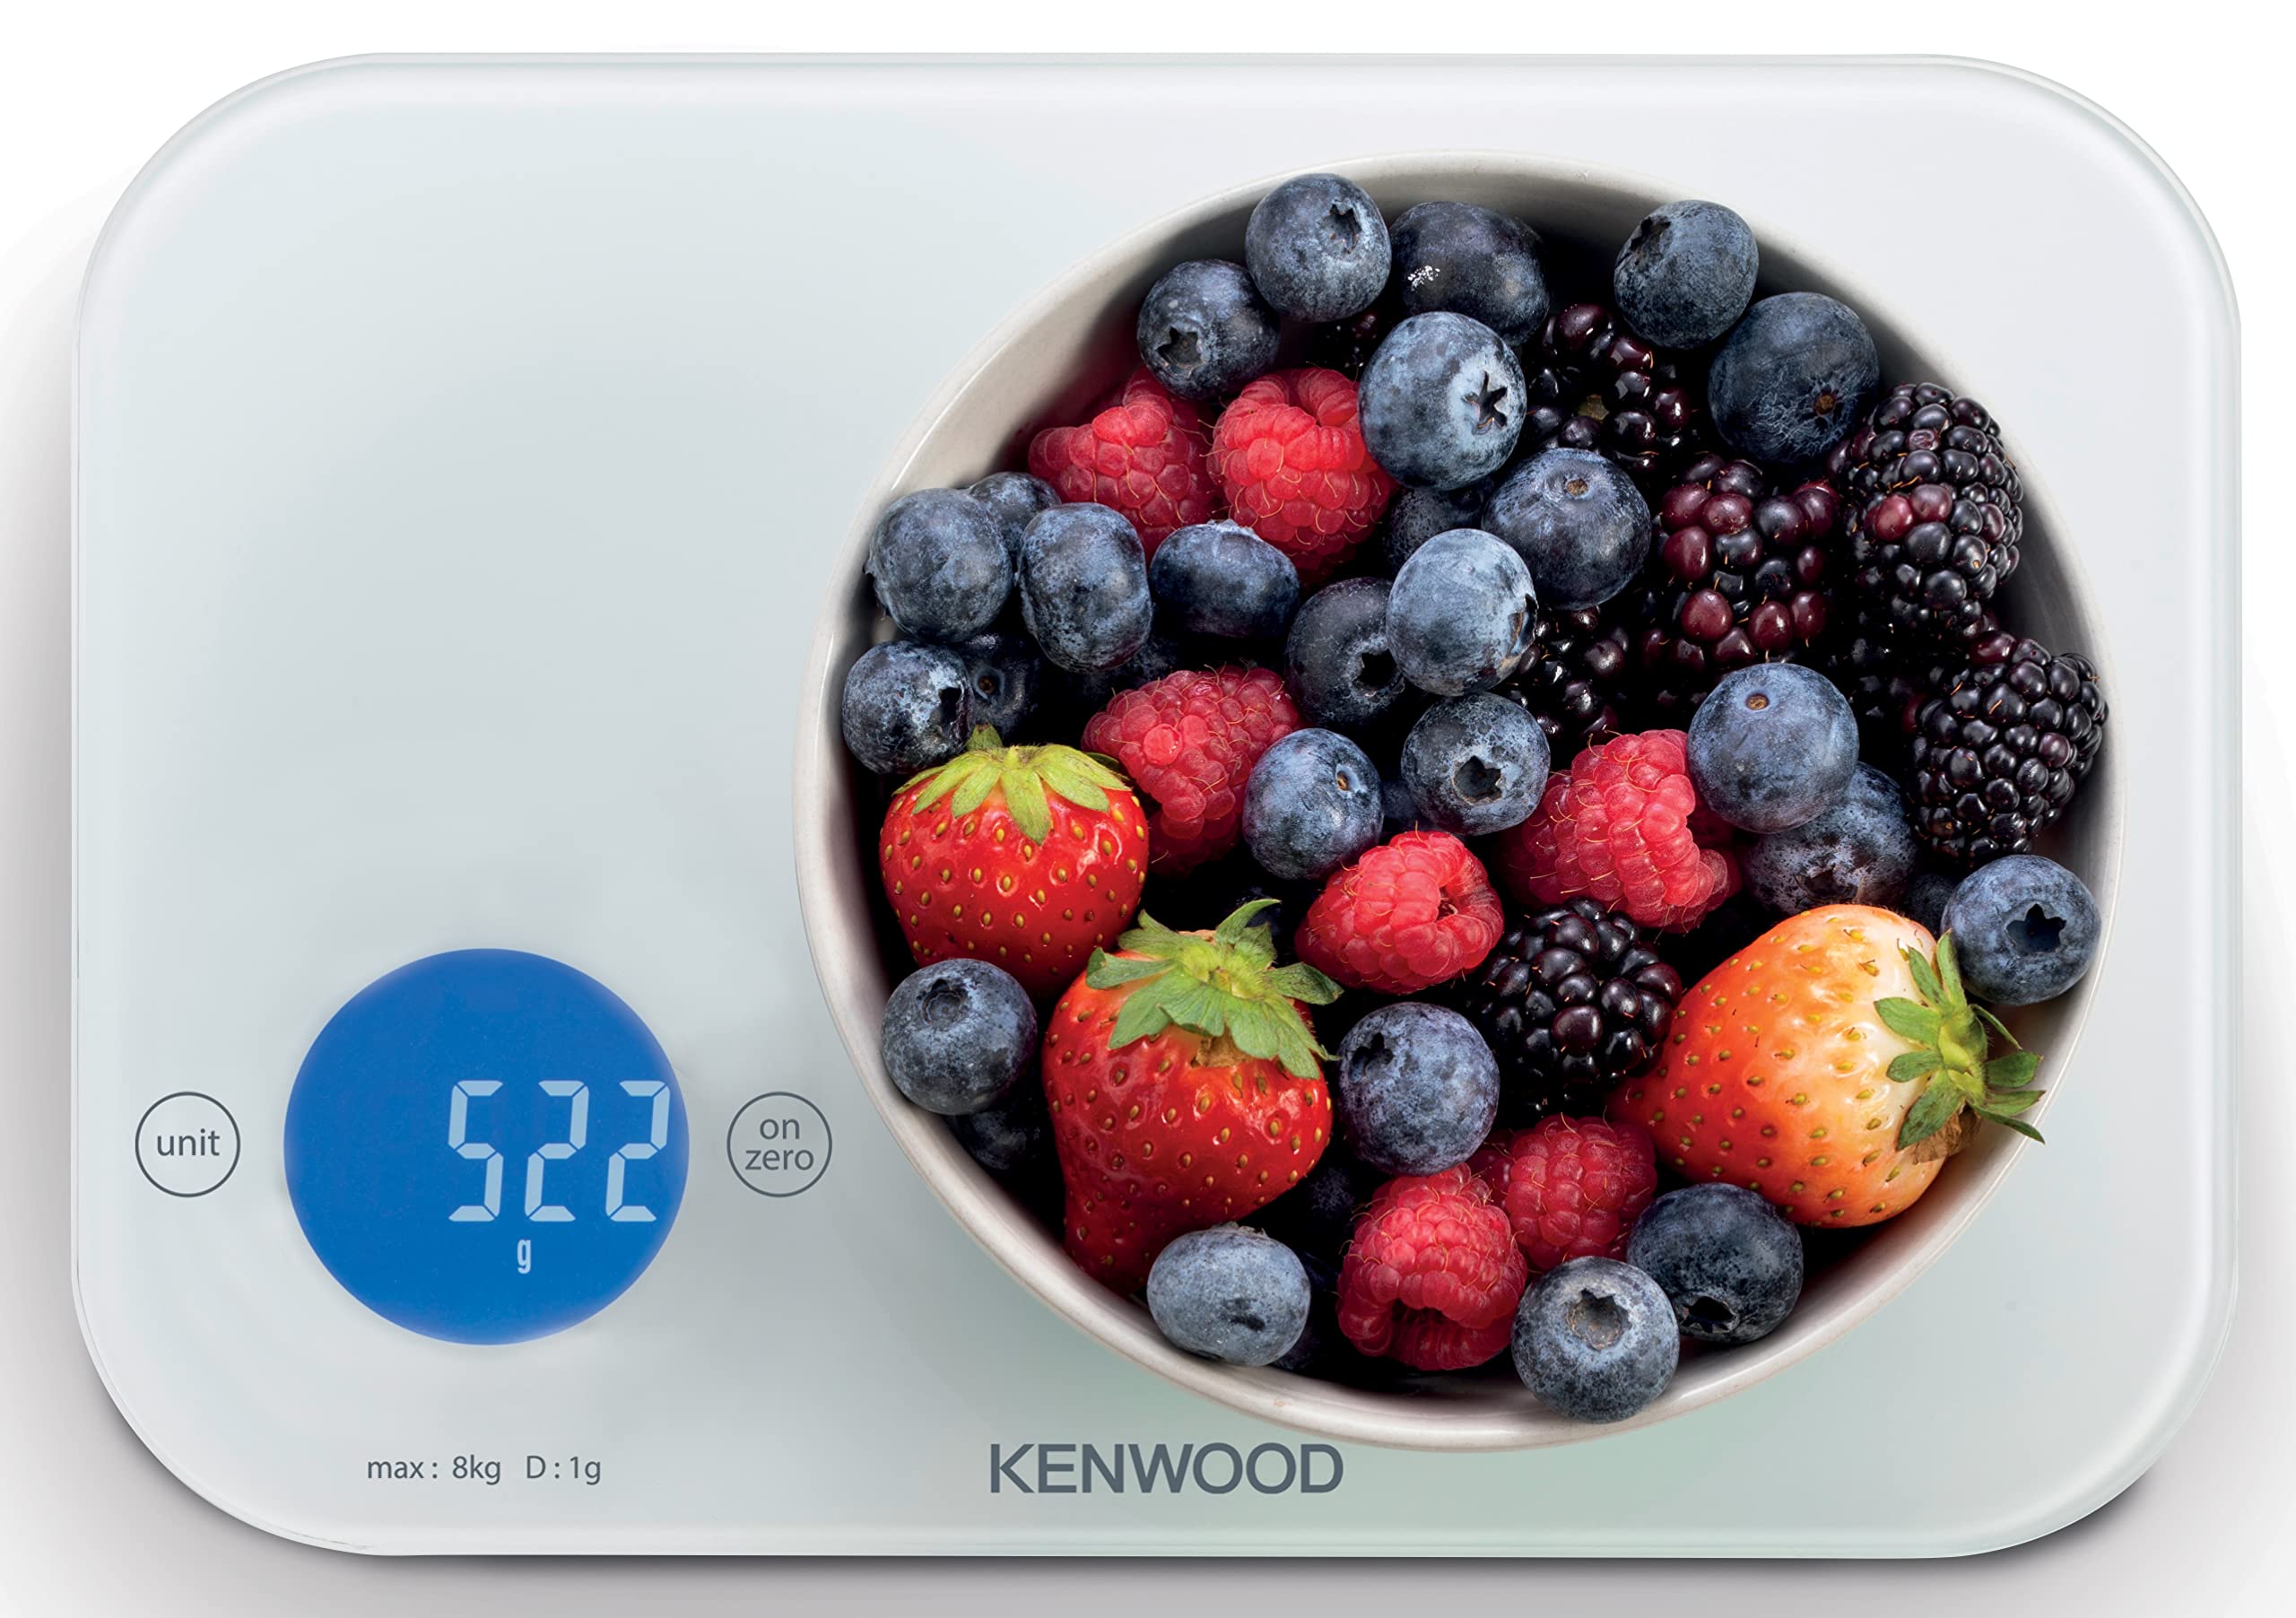  Kenwood digital scale wep50